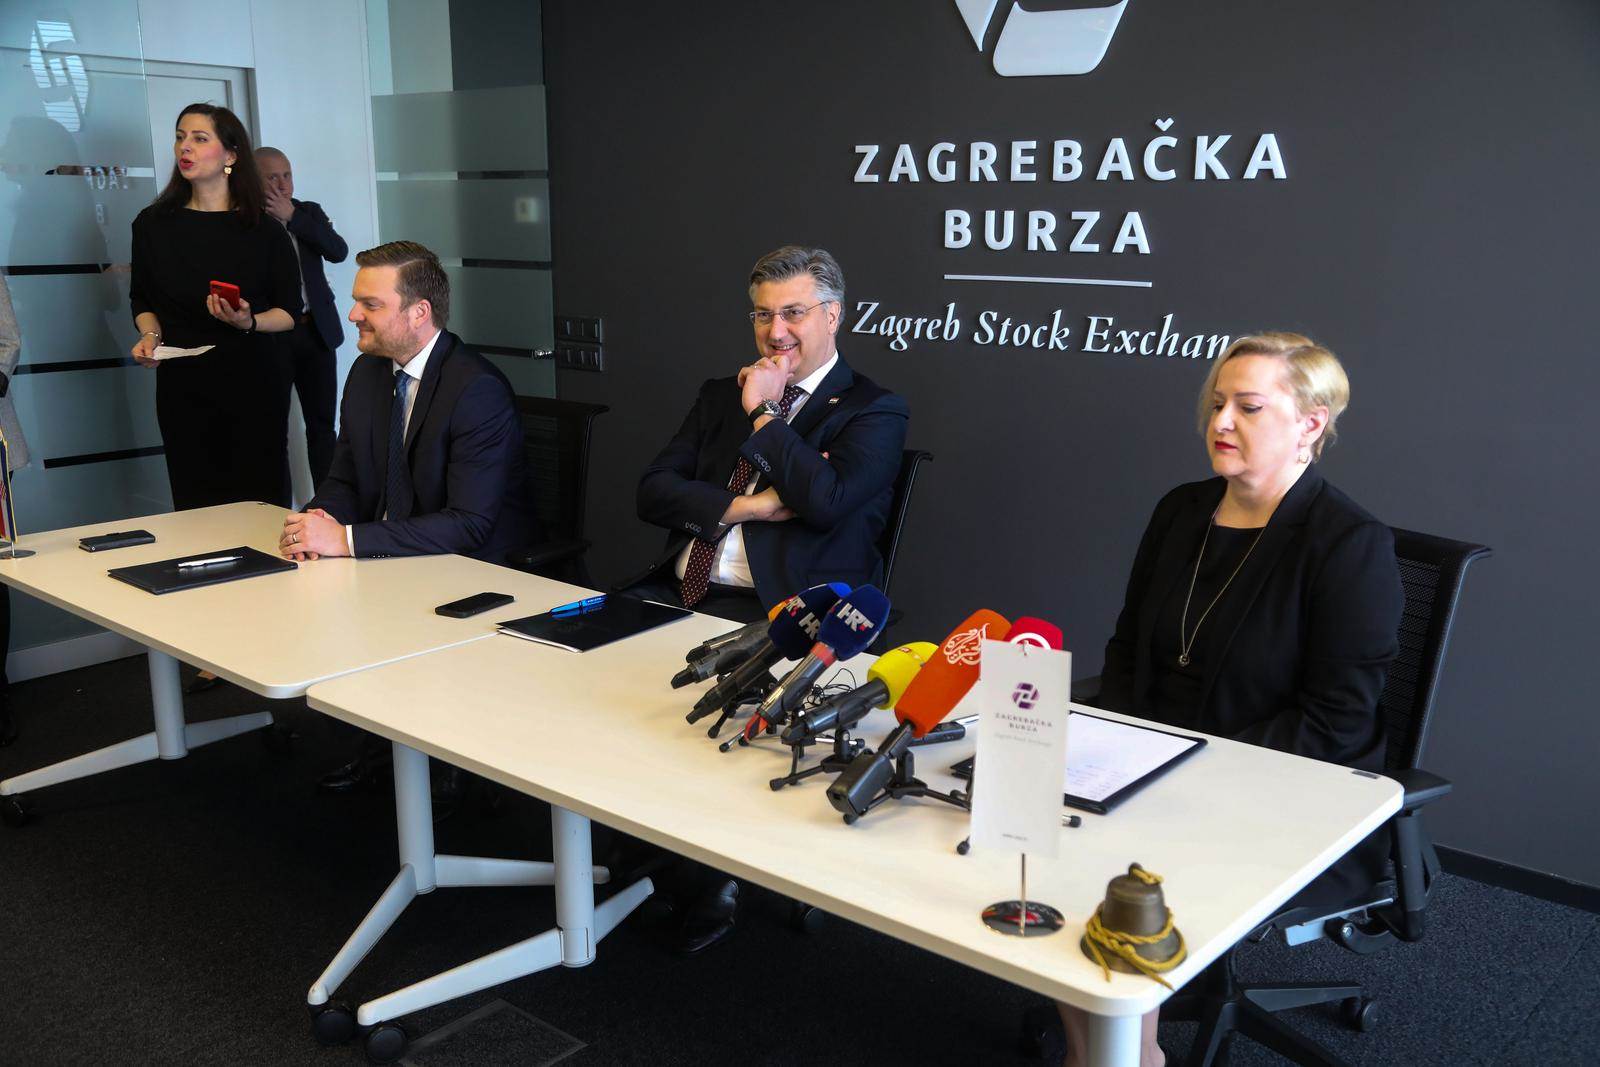  ugovor o uvrštenju 'narodnih obveznica' na Zagrebačku burzu 